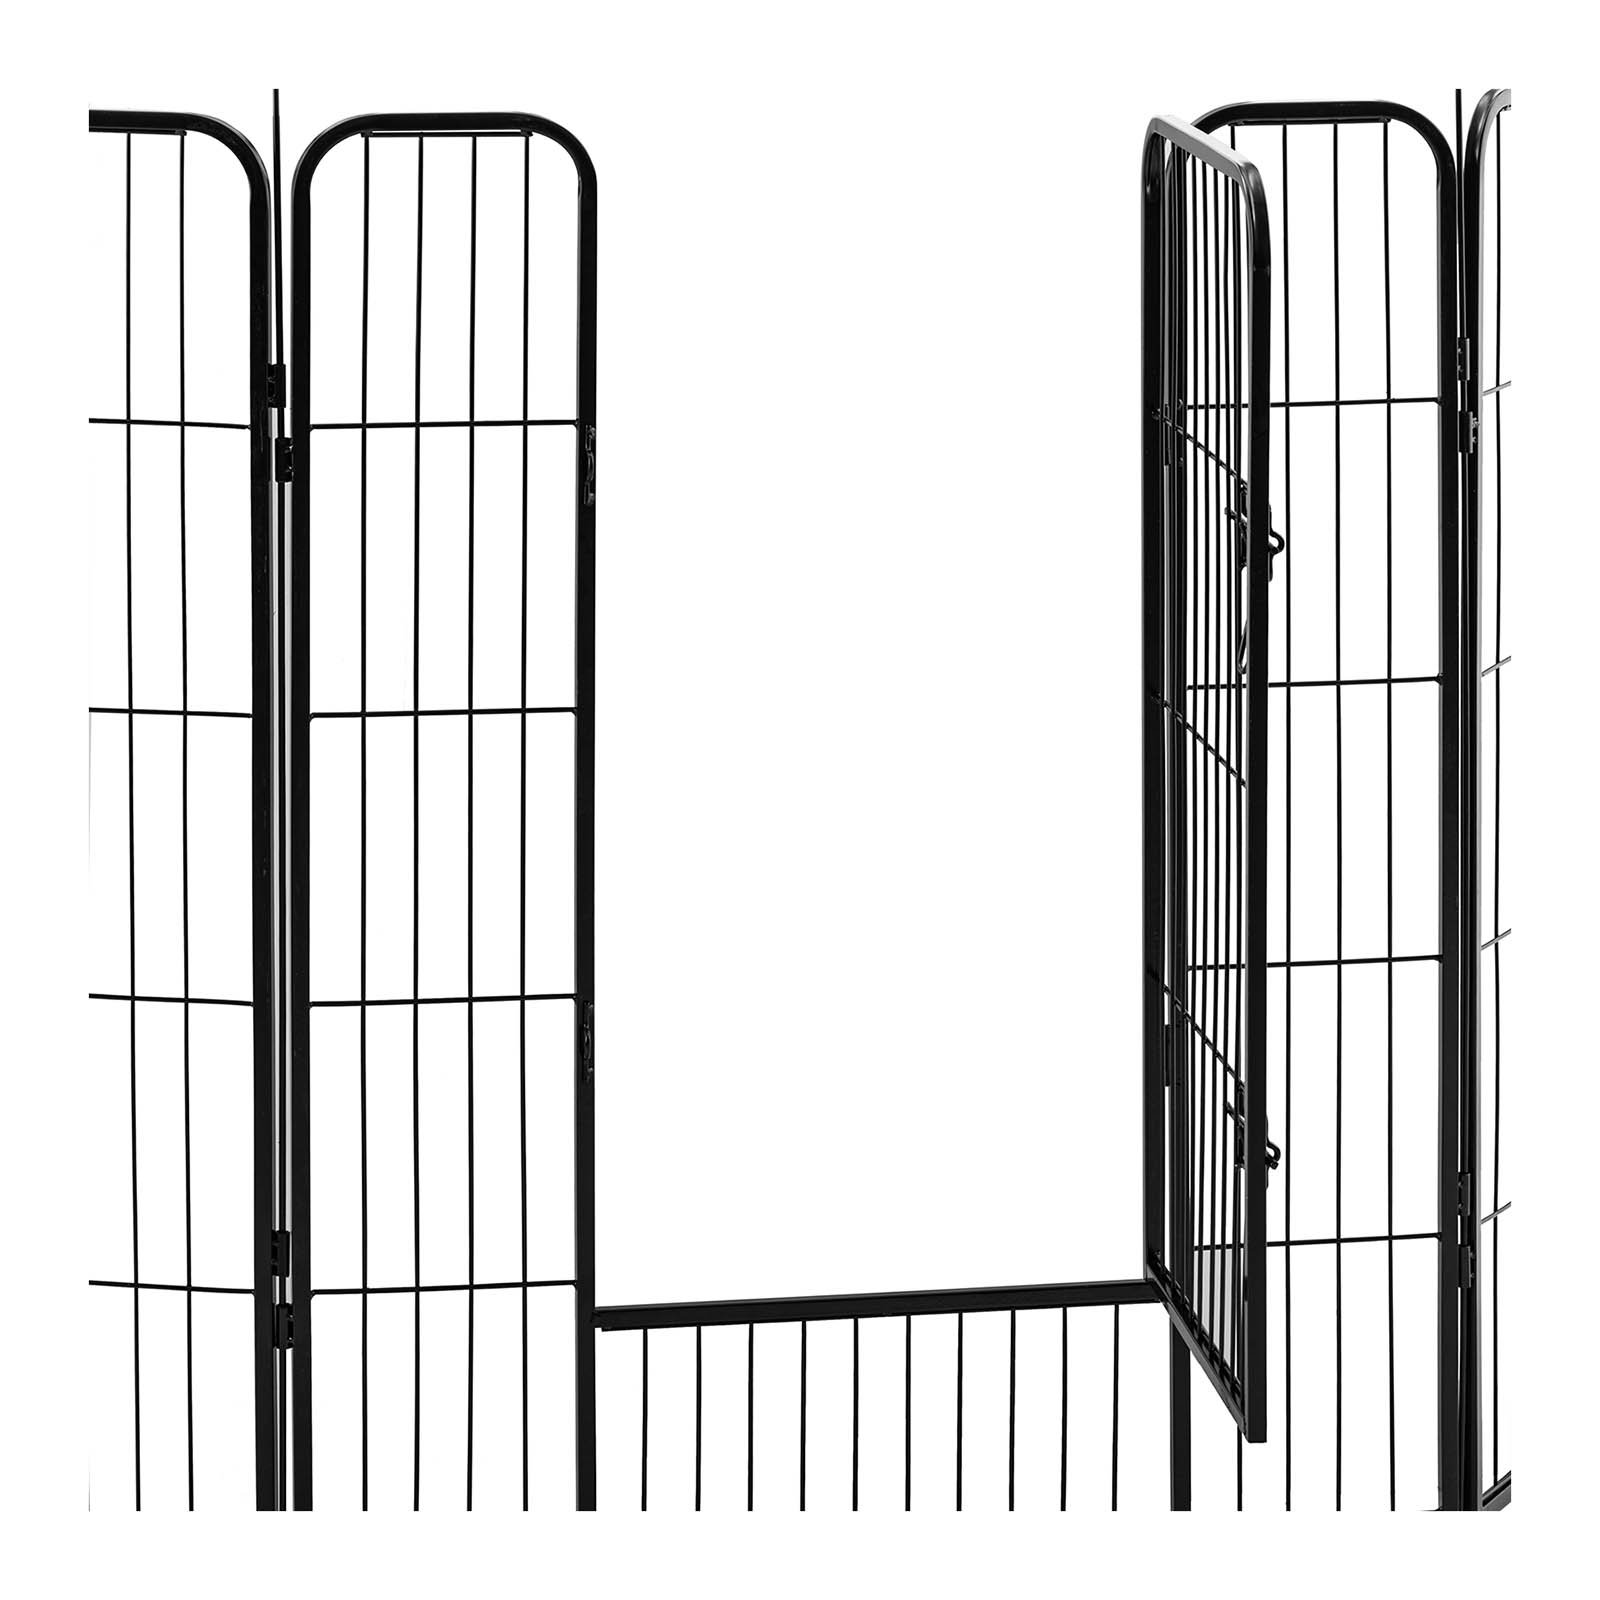 Welpenauslauf - mit Tür - 8 modulare Segmente - 100 cm Höhe